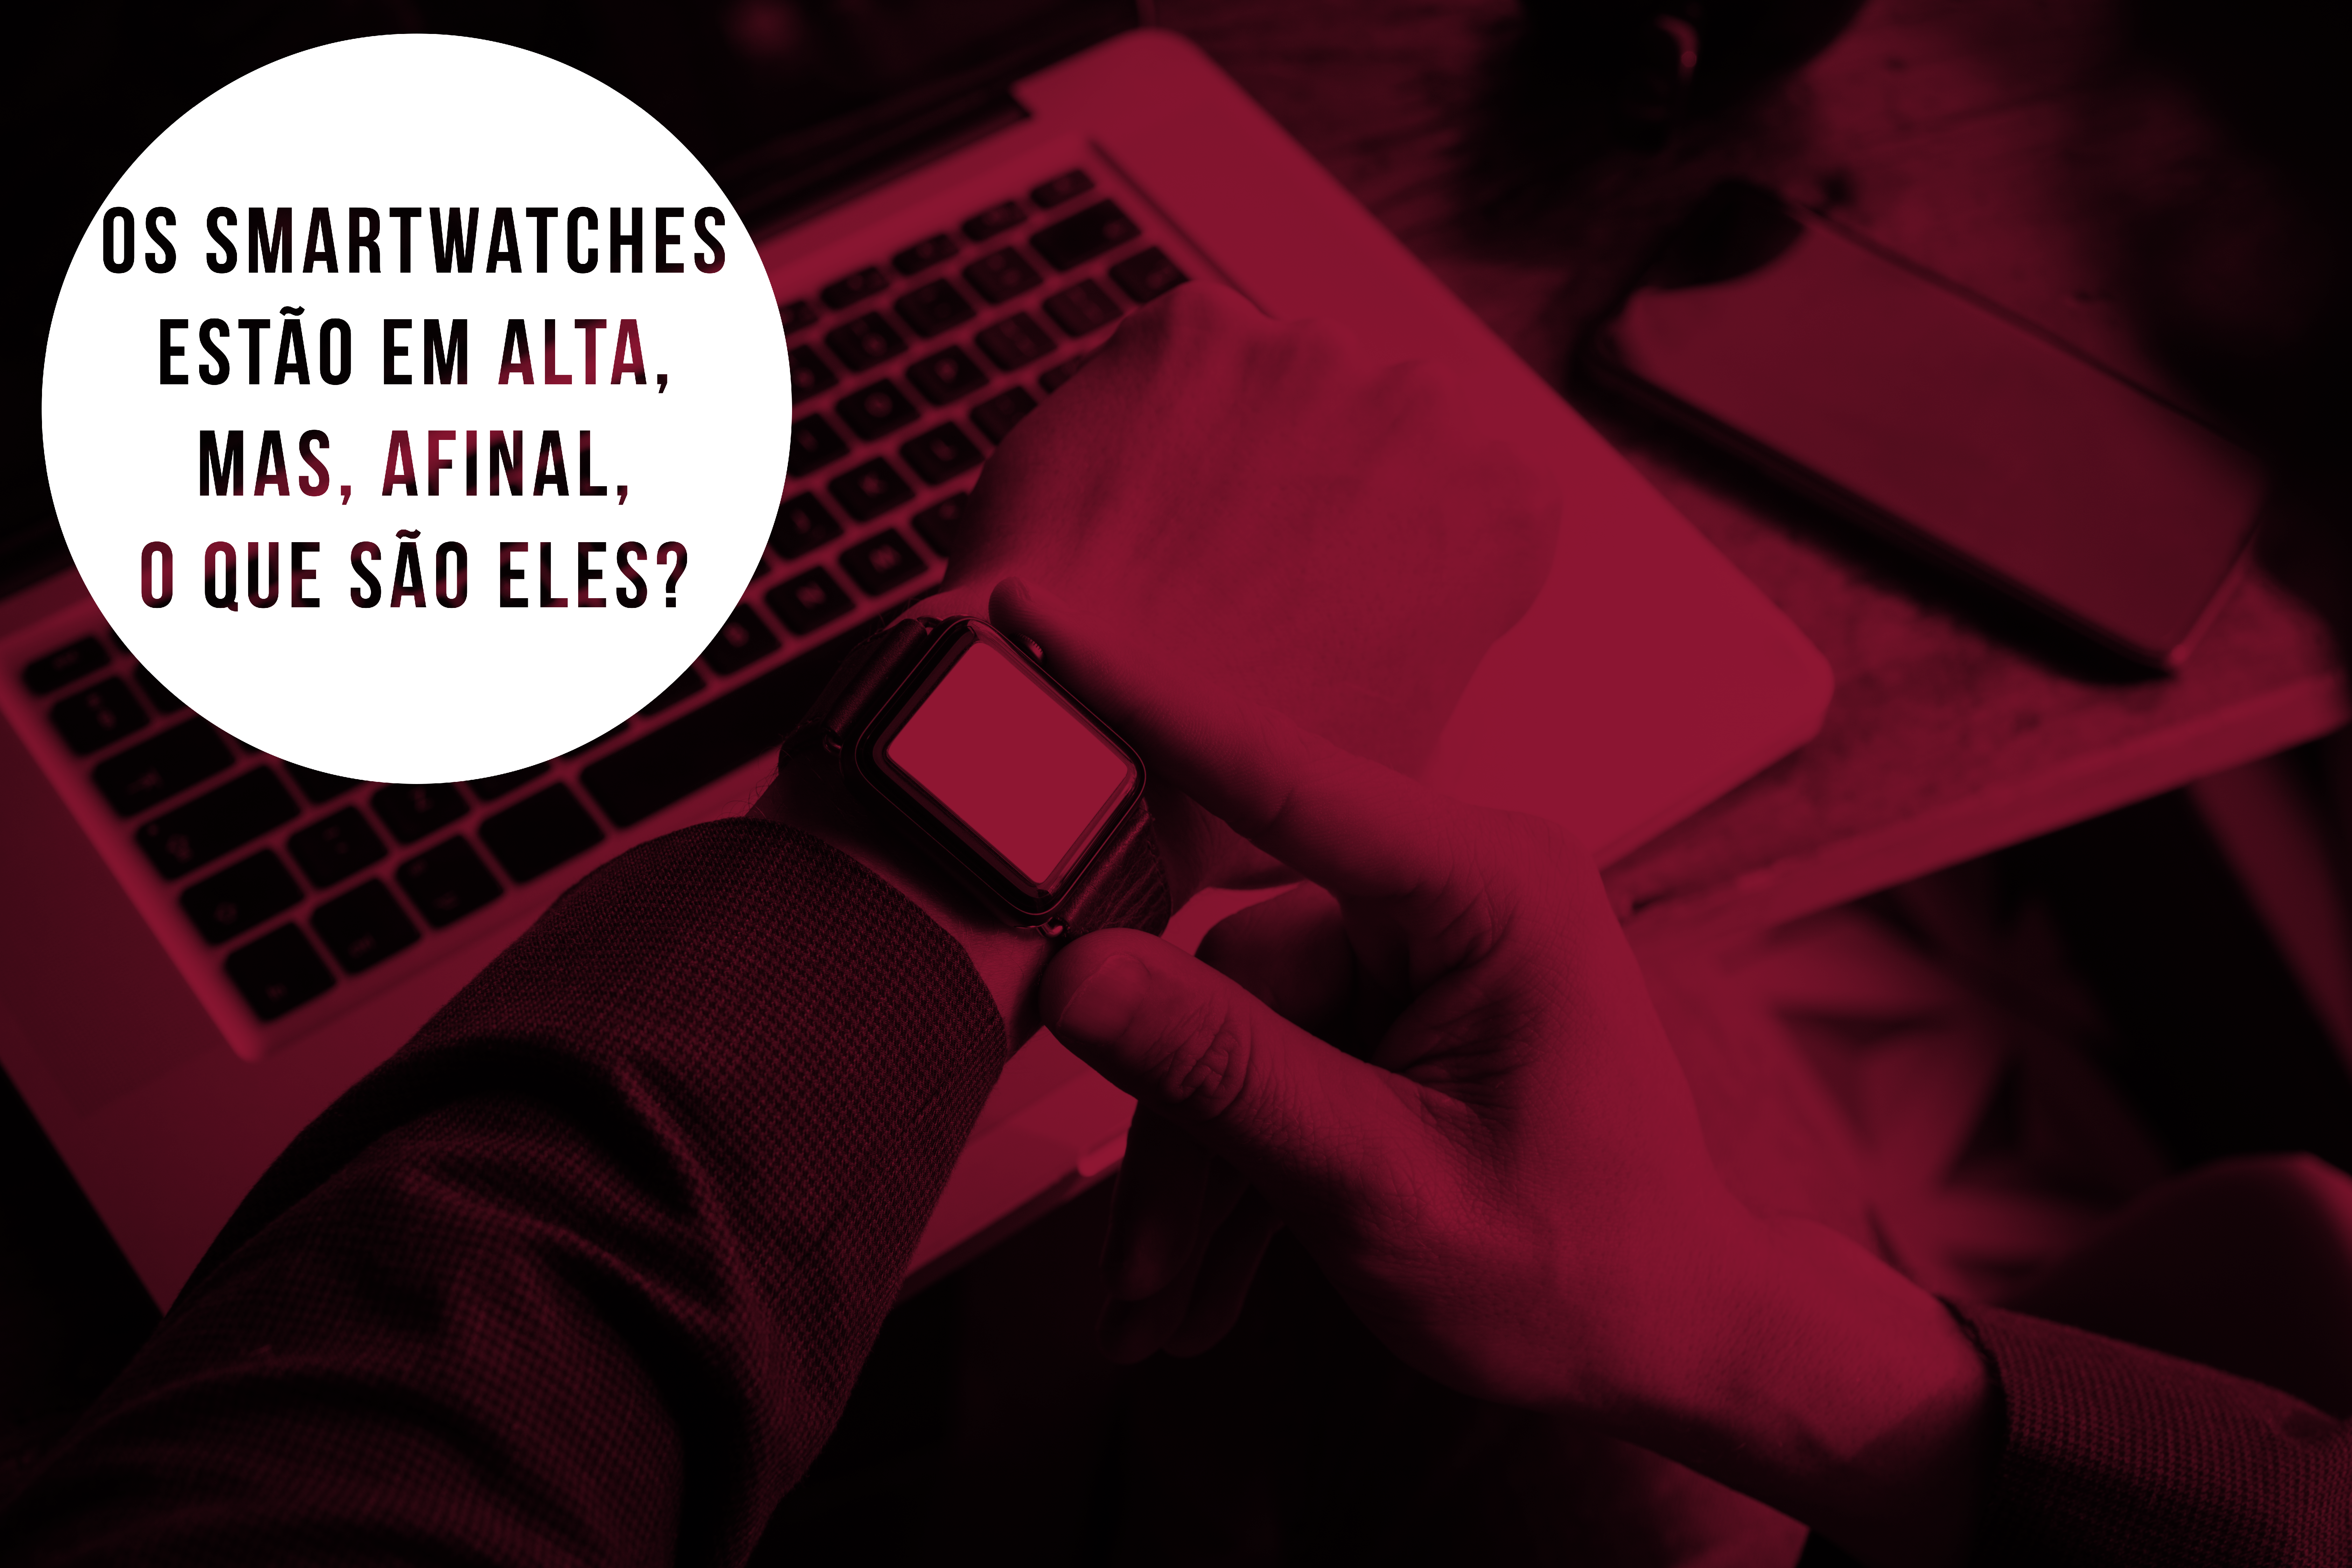 Os smartwatches estão em alta entre os consumidores, mas, afinal, o que são eles?